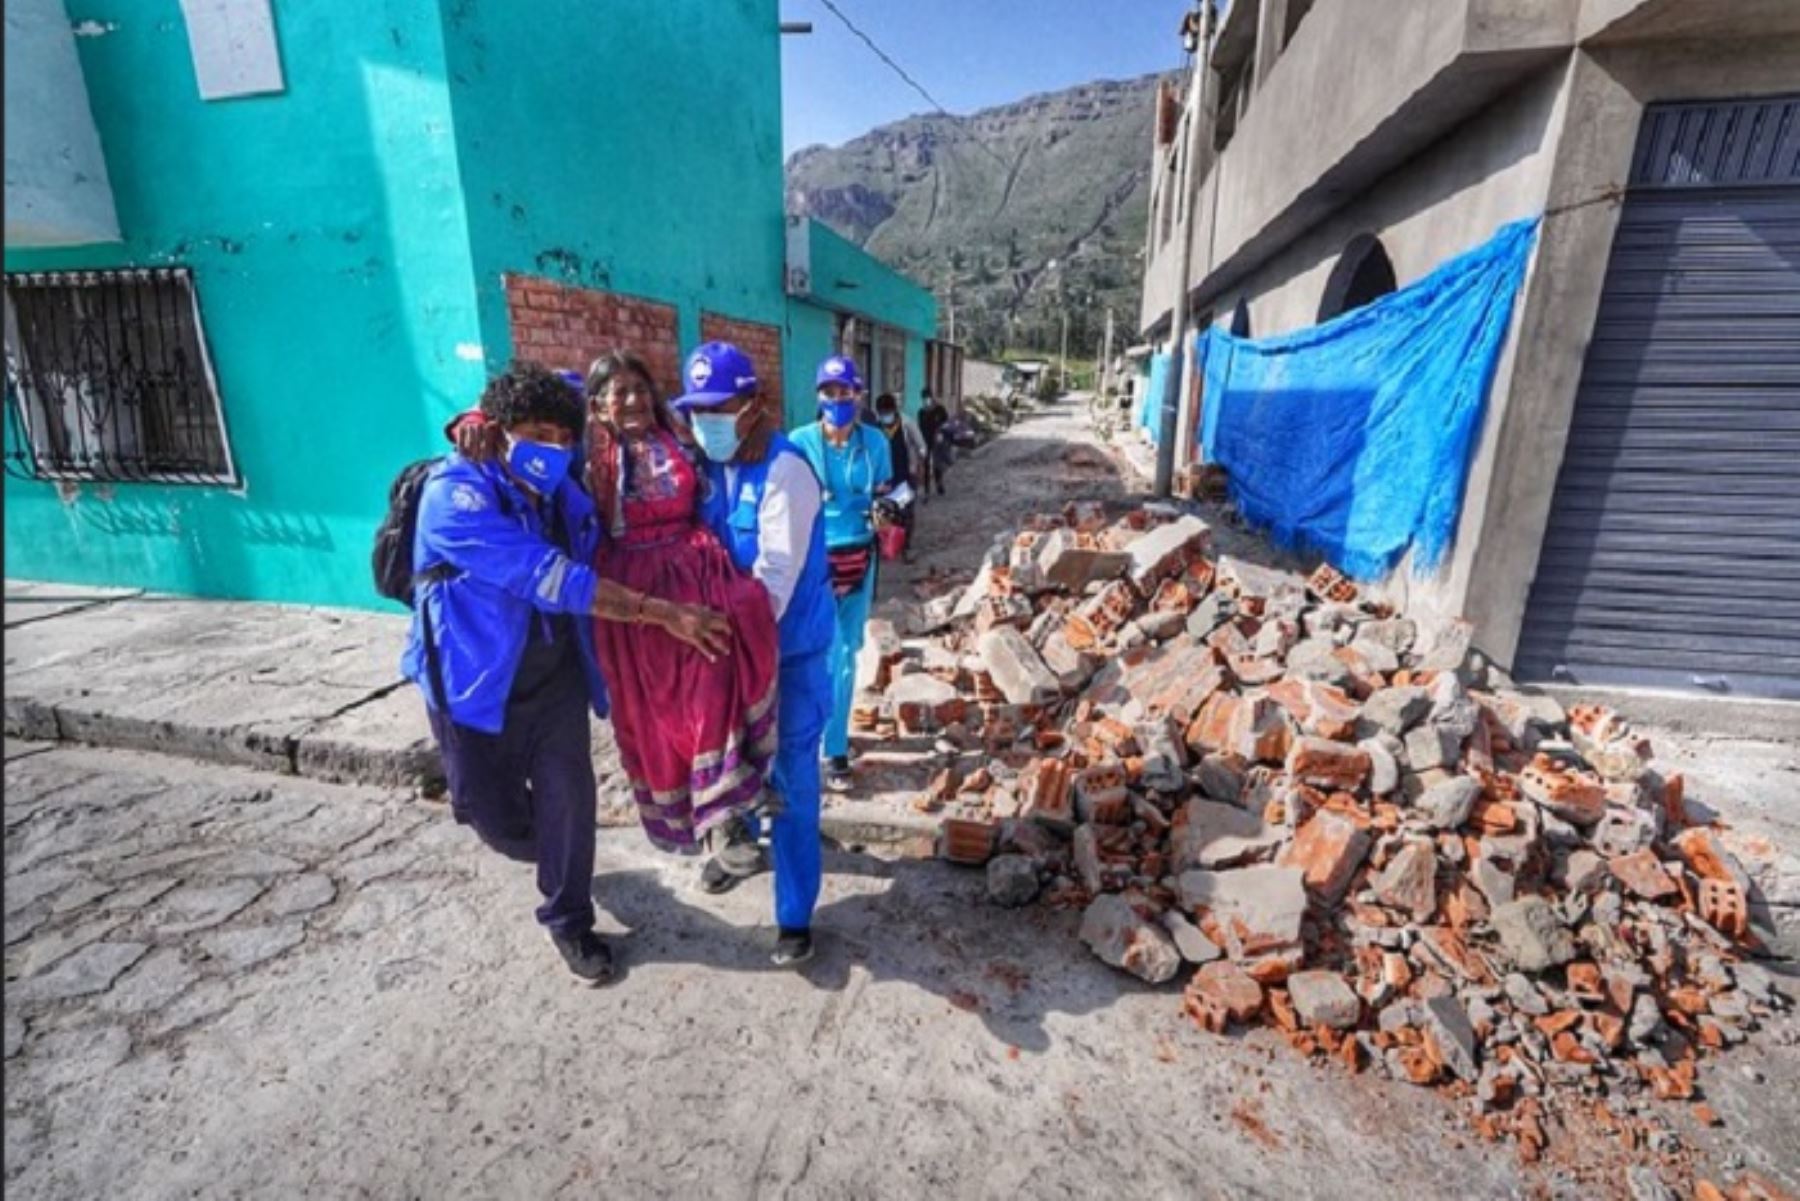 El Ejecutivo prorrogó, por un plazo de 60 días calendario, el estado de emergencia en ocho distritos de la provincia de Caylloma del departamento de Arequipa, que sufrieron daños por el sismo ocurrido en marzo de este año. Foto: ANDINA/archivo.